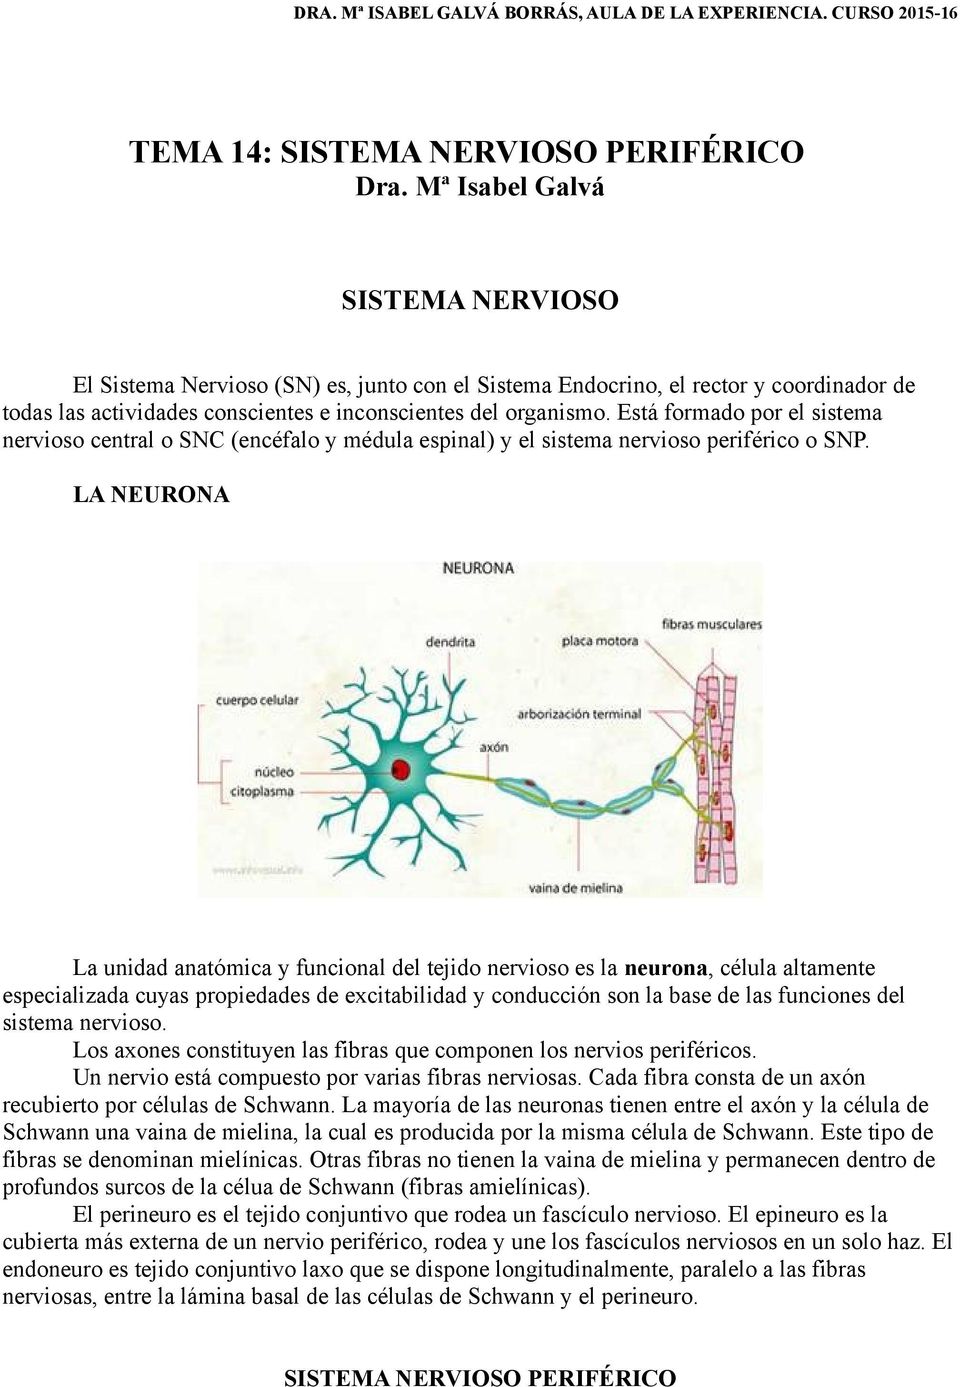 Está formado por el sistema nervioso central o SNC (encéfalo y médula espinal) y el sistema nervioso periférico o SNP.